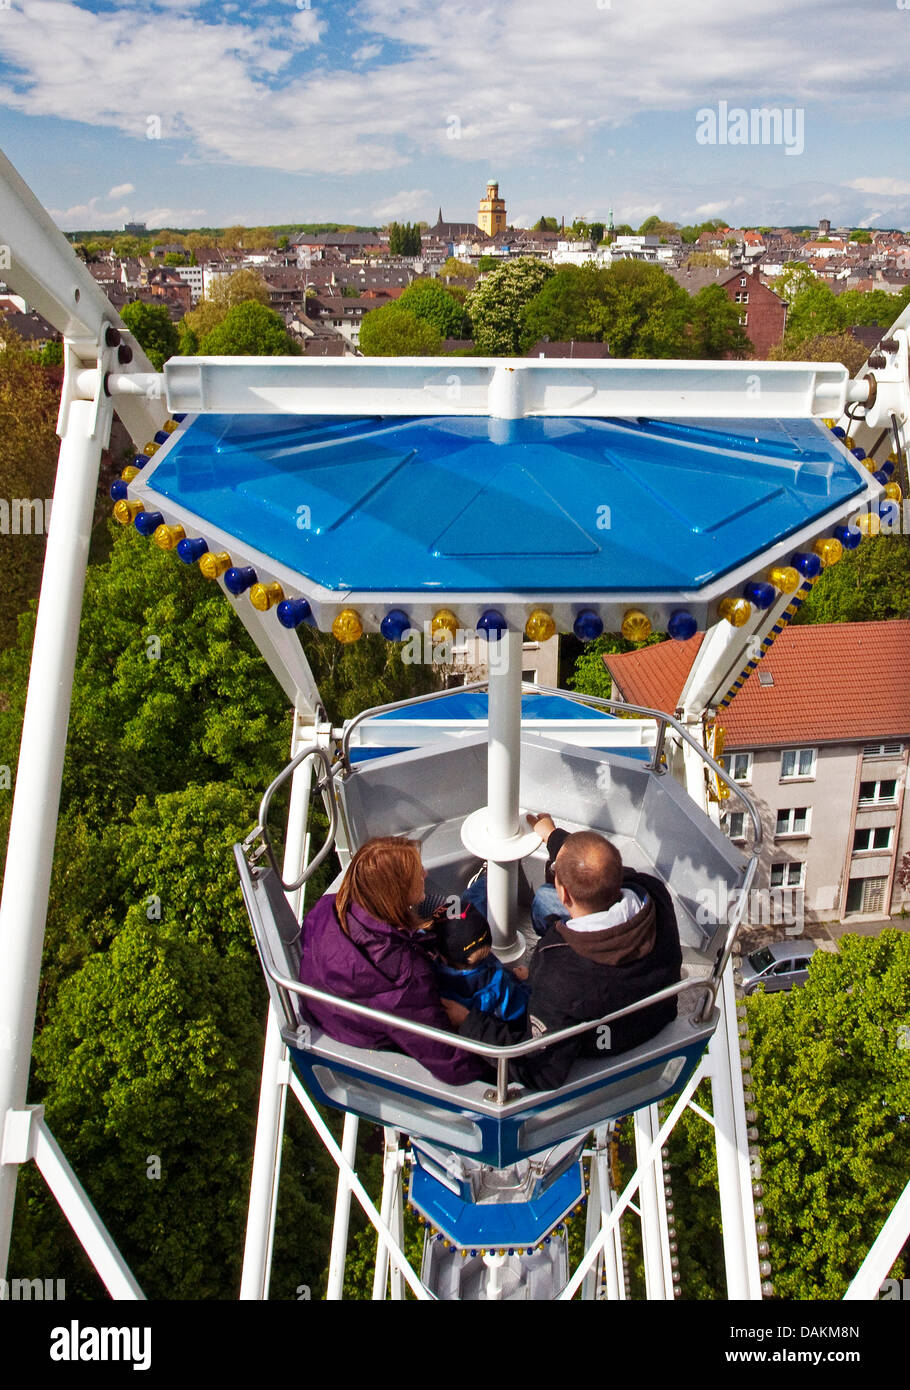 Familie mit einem Kind in einer Gondel des Riesenrads mit Ausblick auf das Rathaus Turm, Witten, Ruhrgebiet, Nordrhein-Westfalen, Deutschland Stockfoto